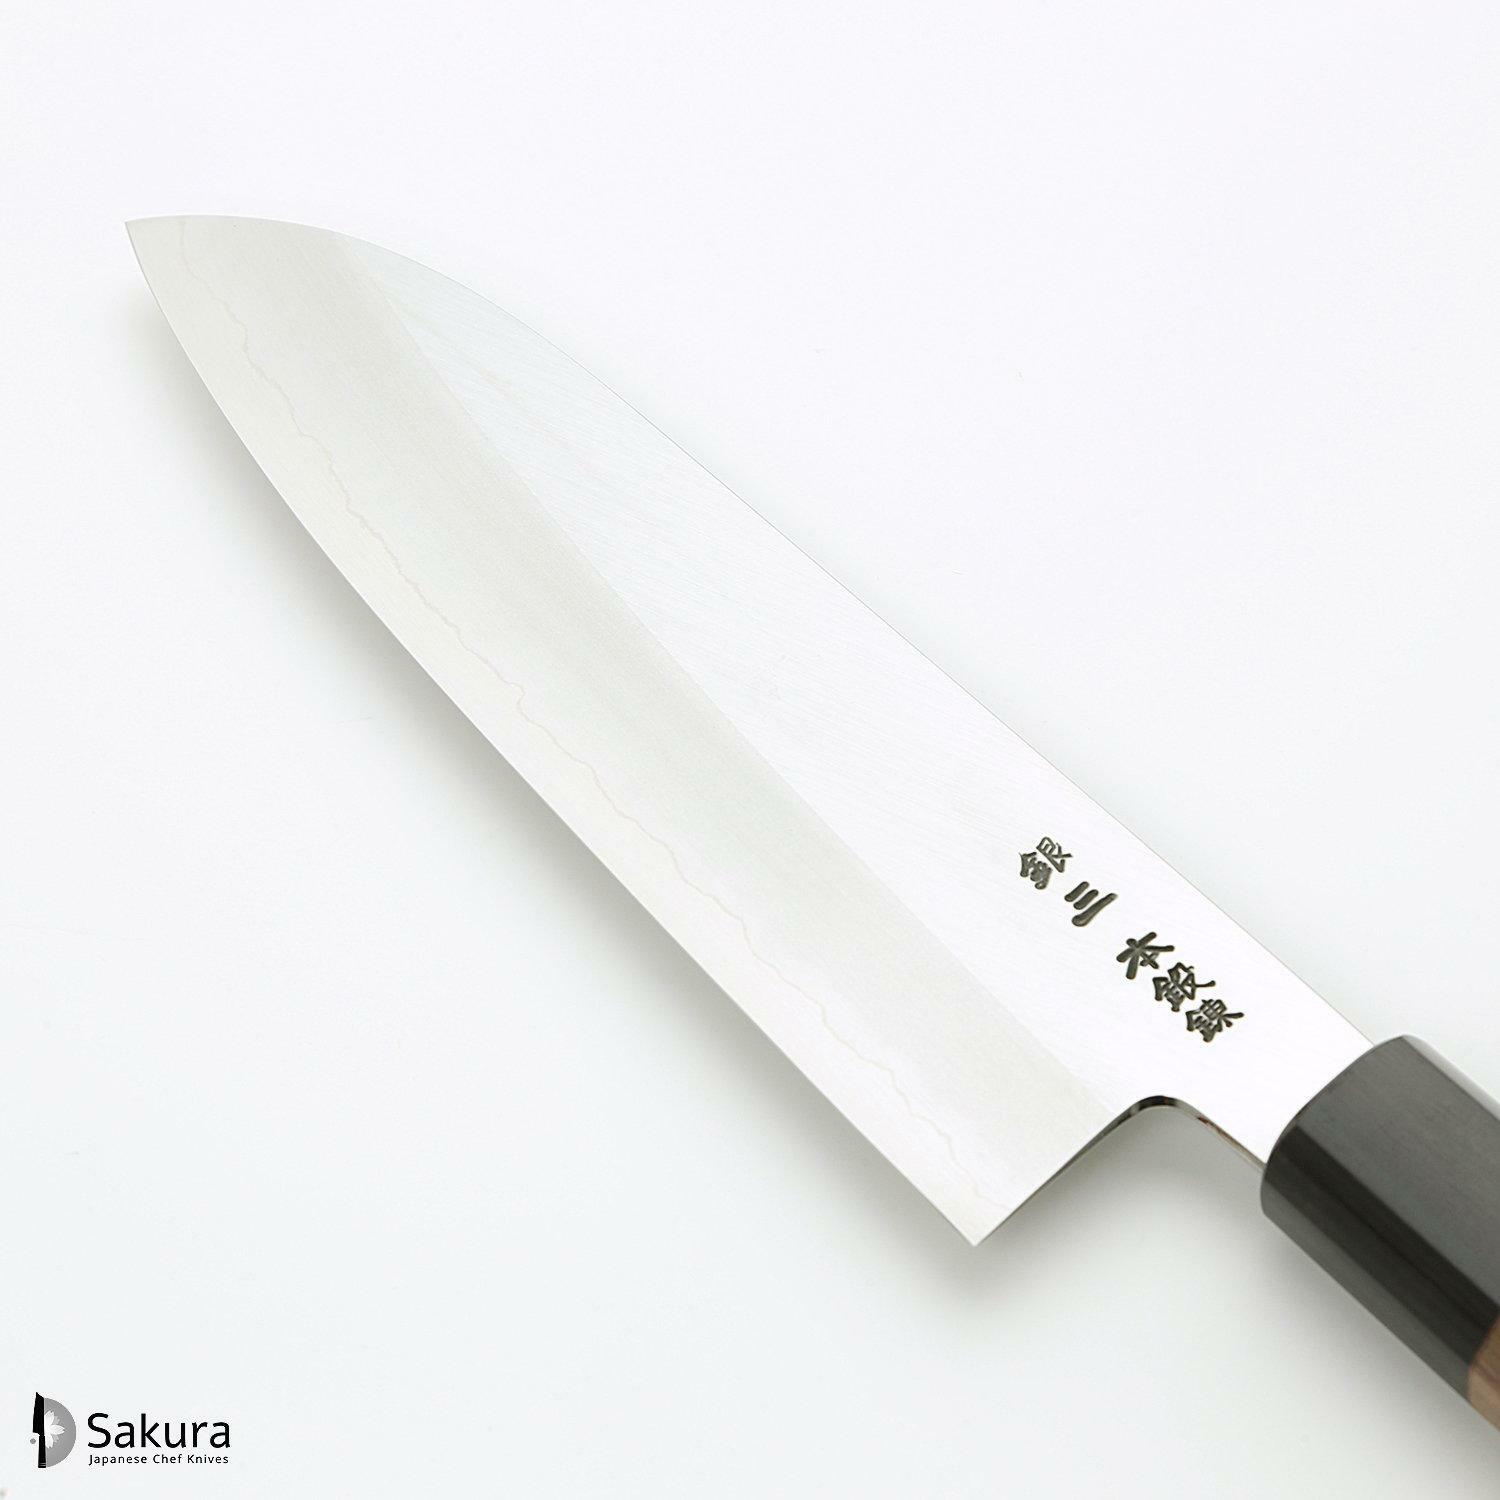 סכין רב-תכליתית סָנטוֹקוּ 180מ״מ מחושלת בעבודת יד 3 שכבות: פלדת פחמן יפנית מתקדמת מסוג Ginsan Silver#3 עטופה פלדת אל-חלד בגימור מט מלוטש גימור מט מלוטש האדו יפן